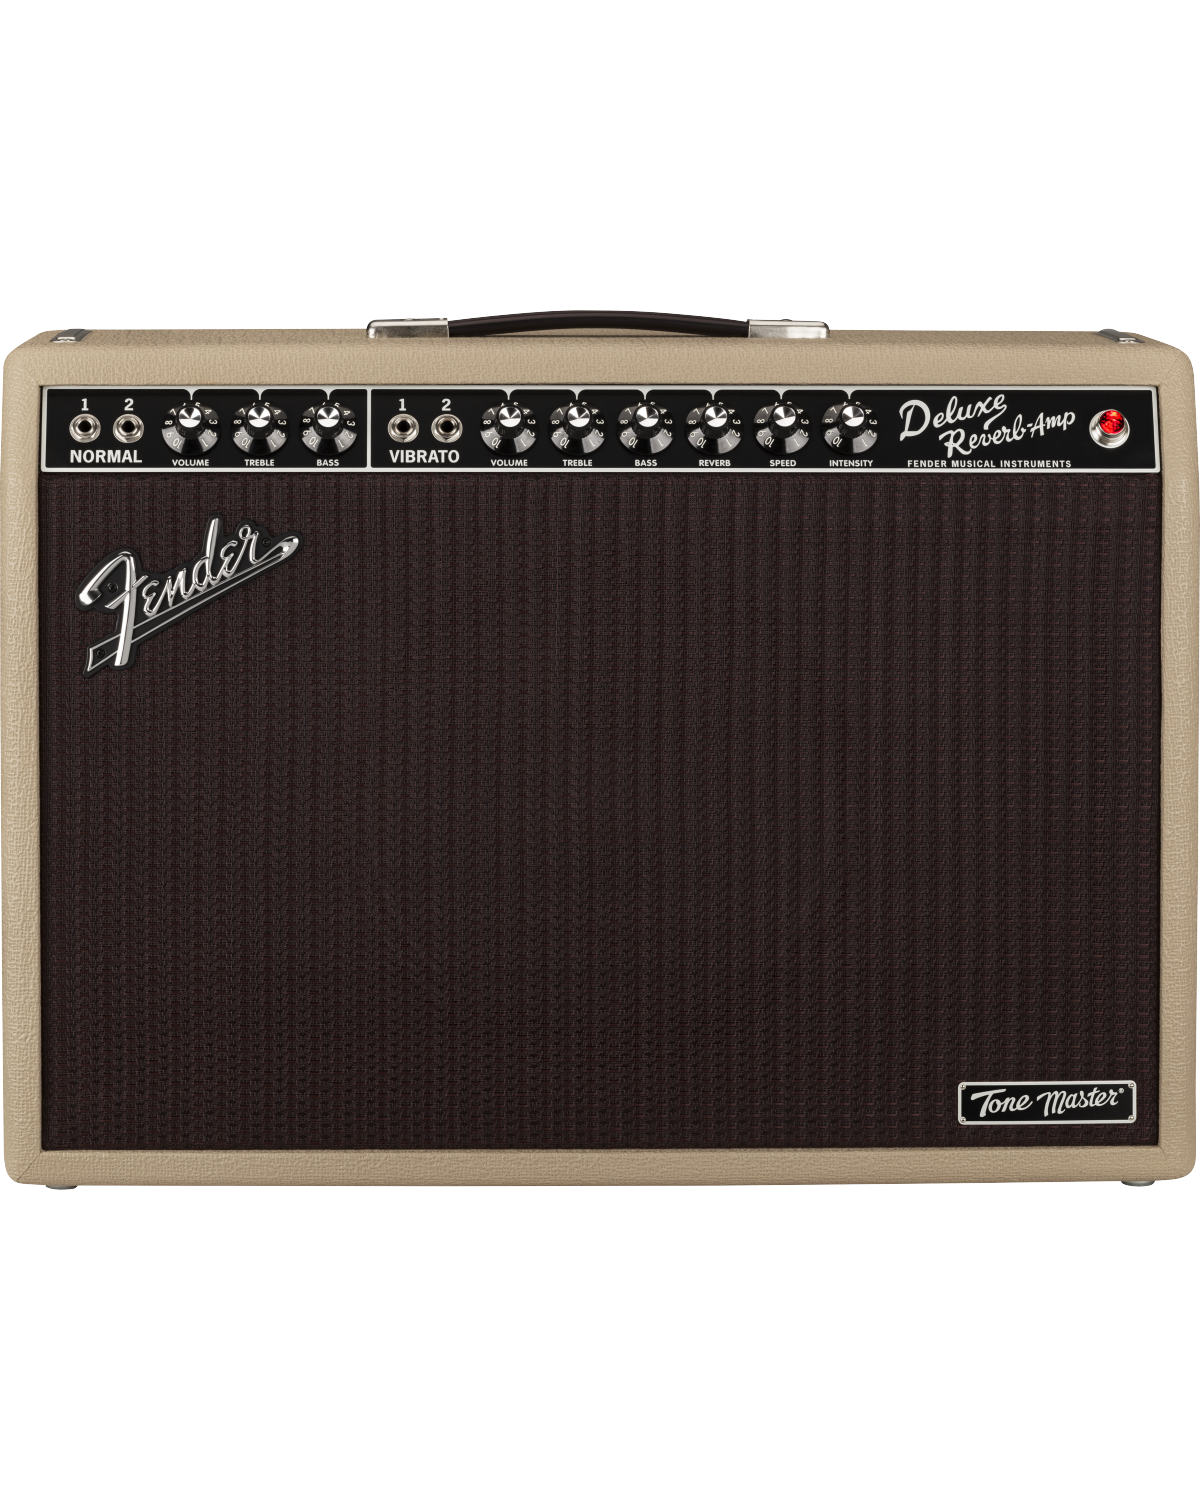 Fender Master Deluxe Reverb, Blonde